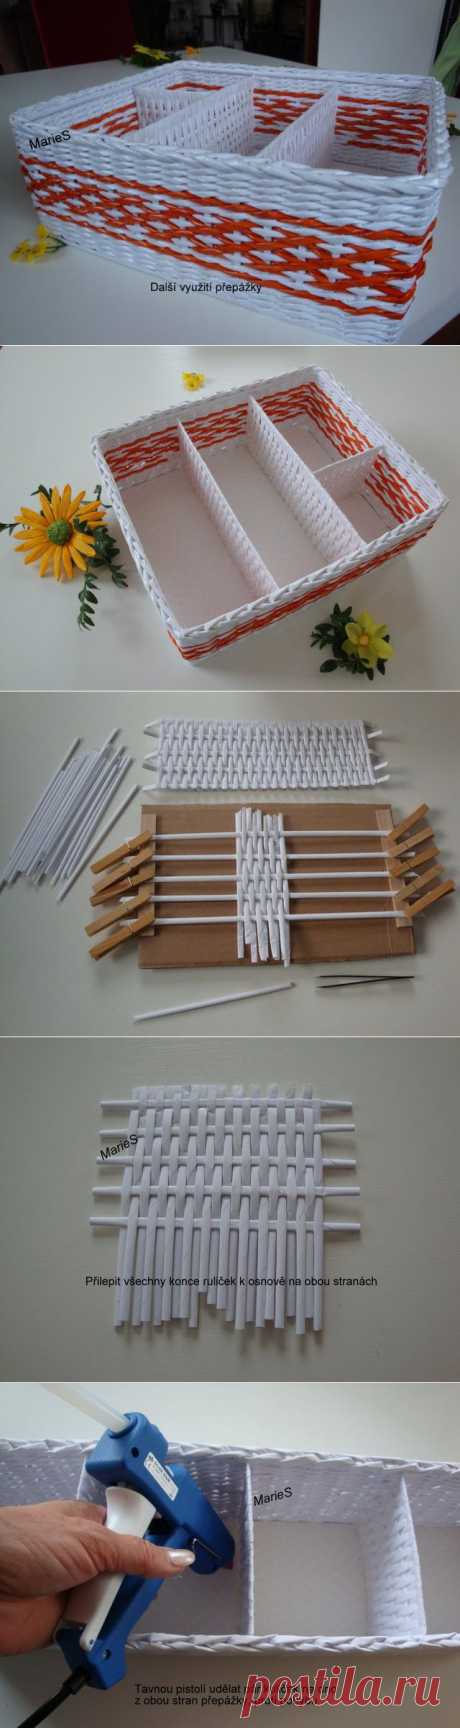 Как сделать коробочку с перегородками: плетение из бумажных трубочек | Умелые ручки